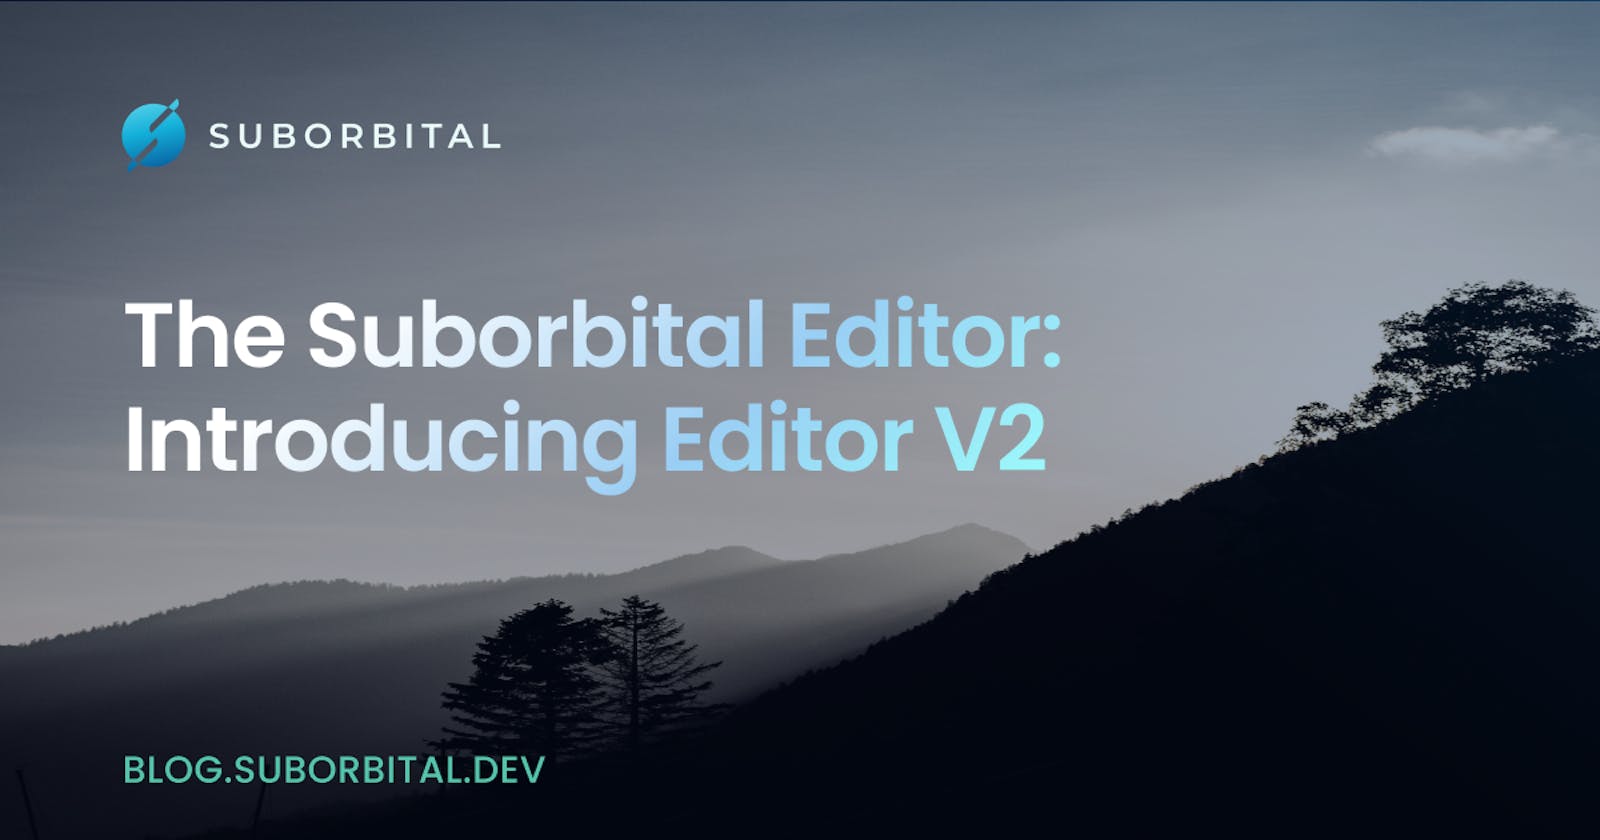 The Suborbital Editor: Introducing Editor V2